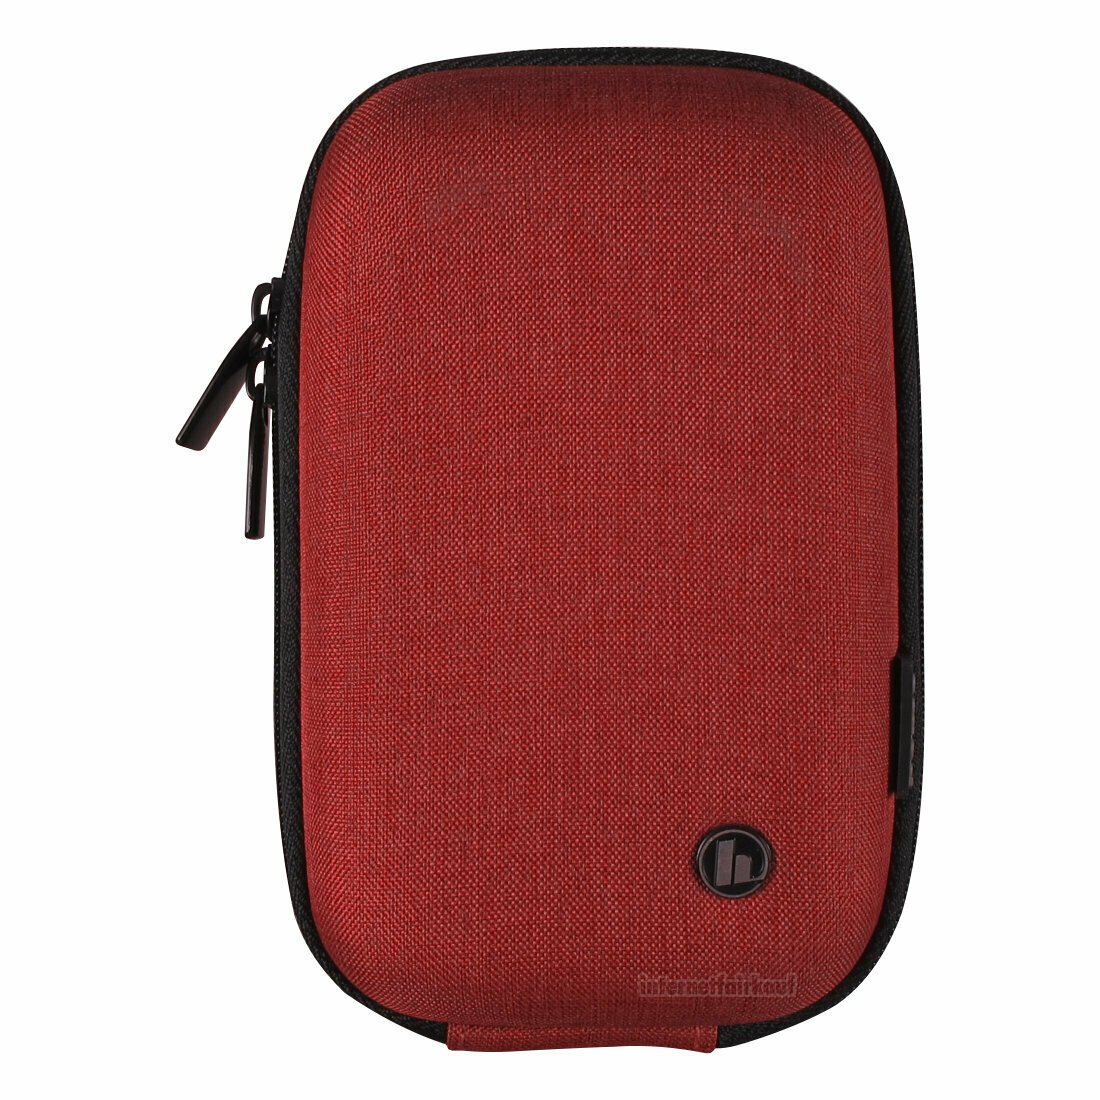 Hardcase Kameratasche rot passend für Nikon Coolpix A900